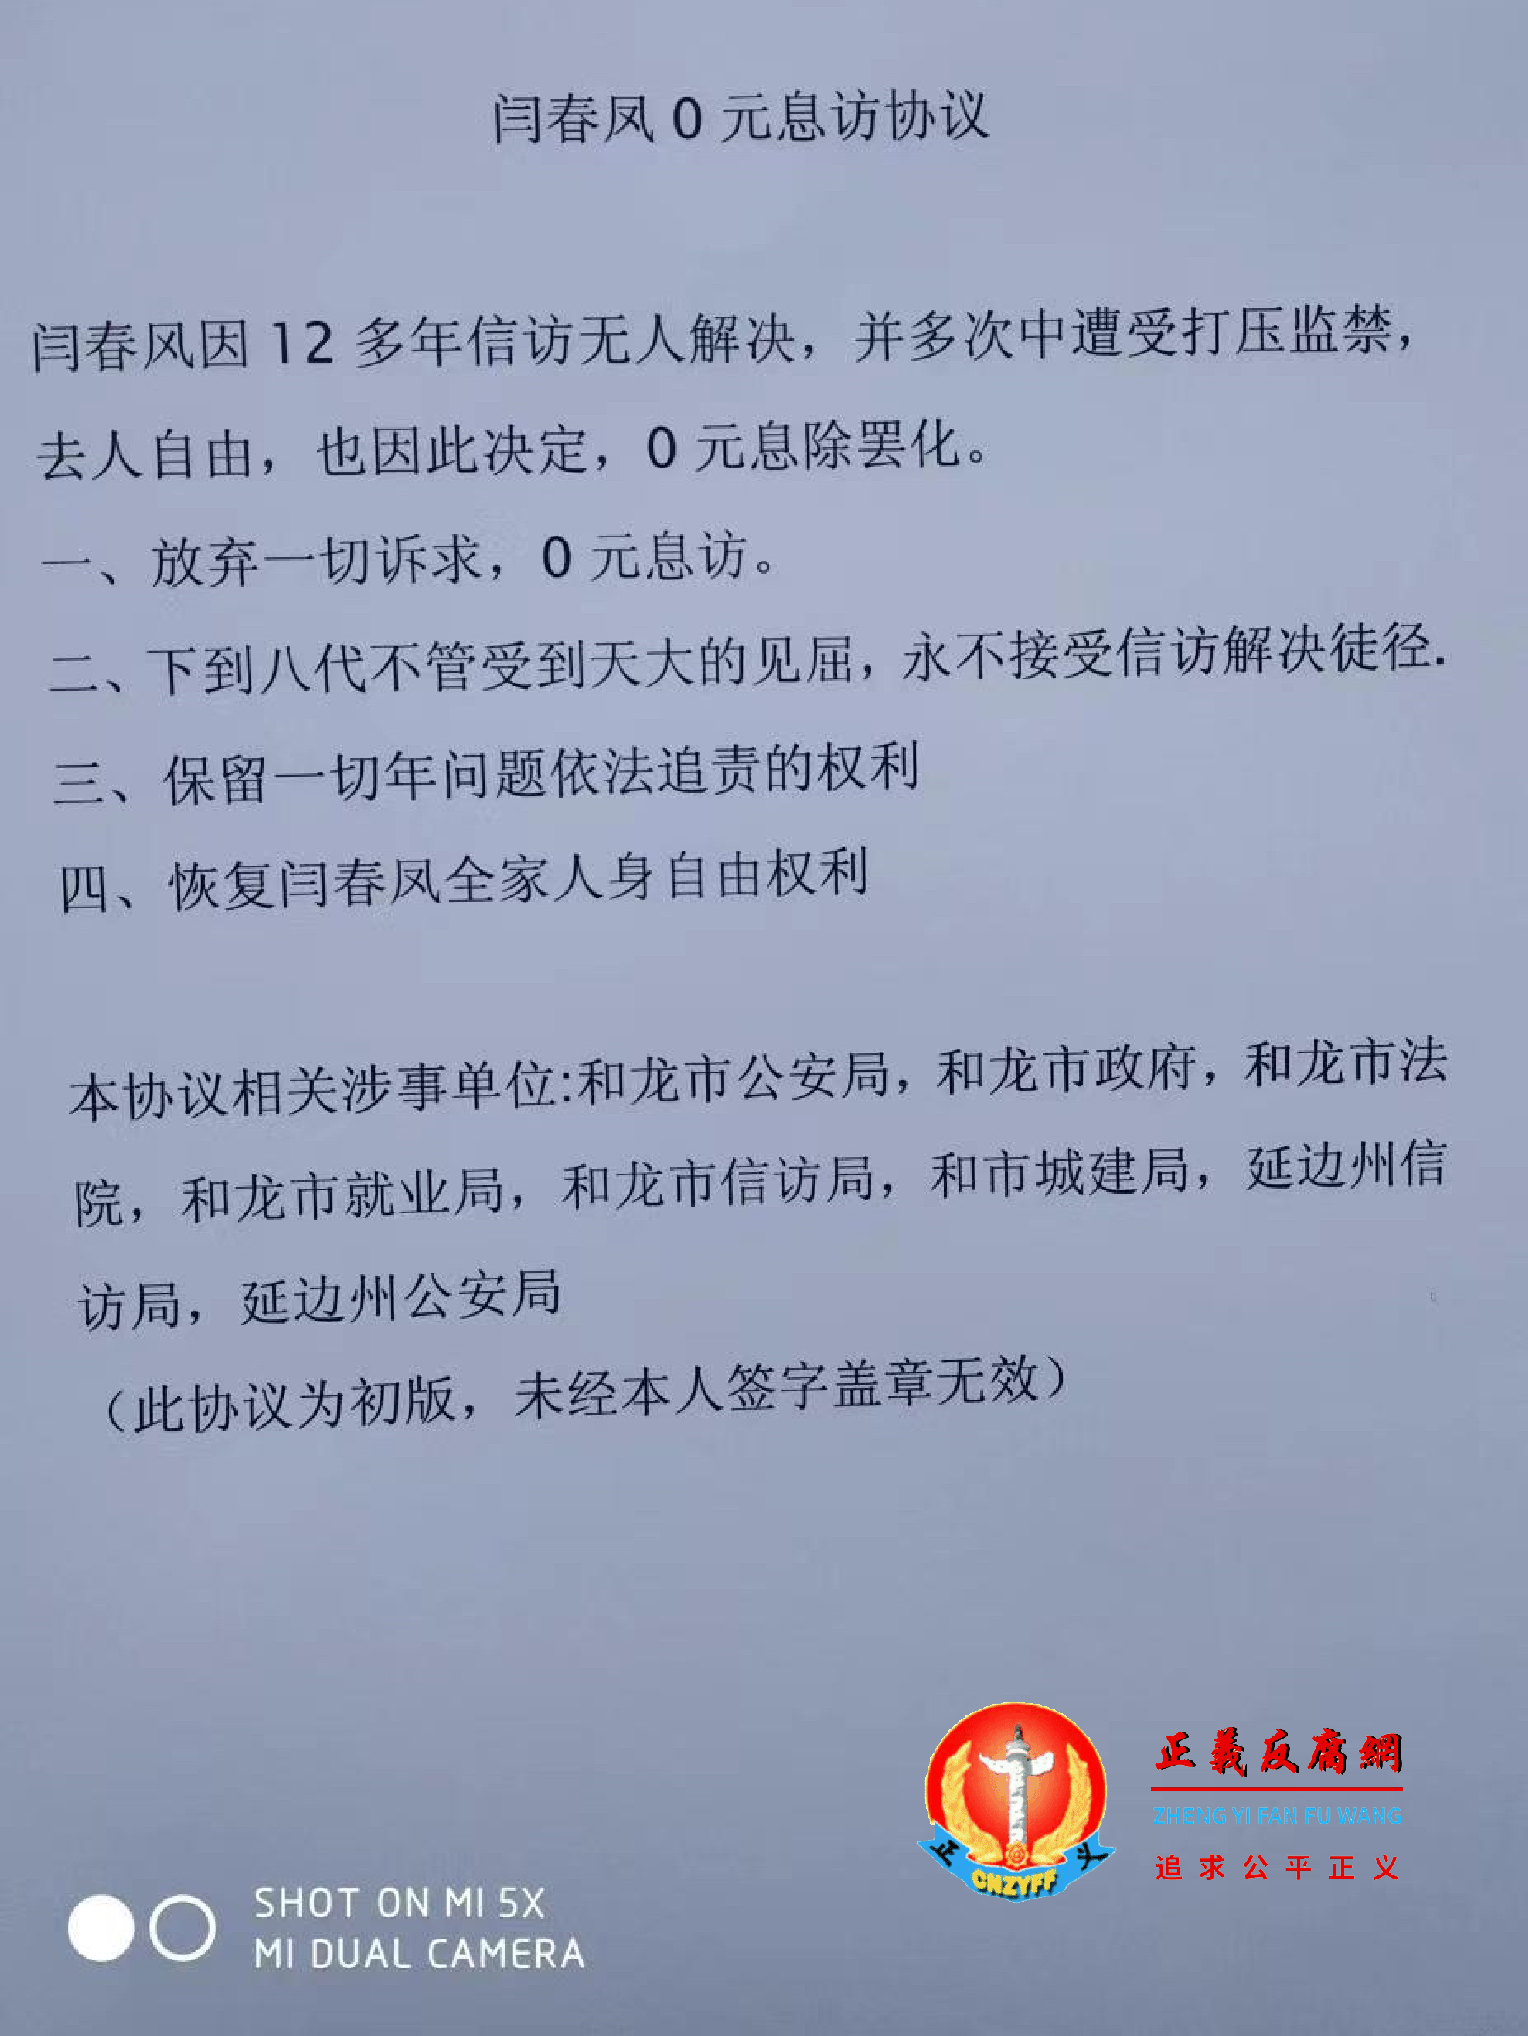 访民闫春凤向延边州和龙市信访局提交了“以零元息访换取人身安全”。.png